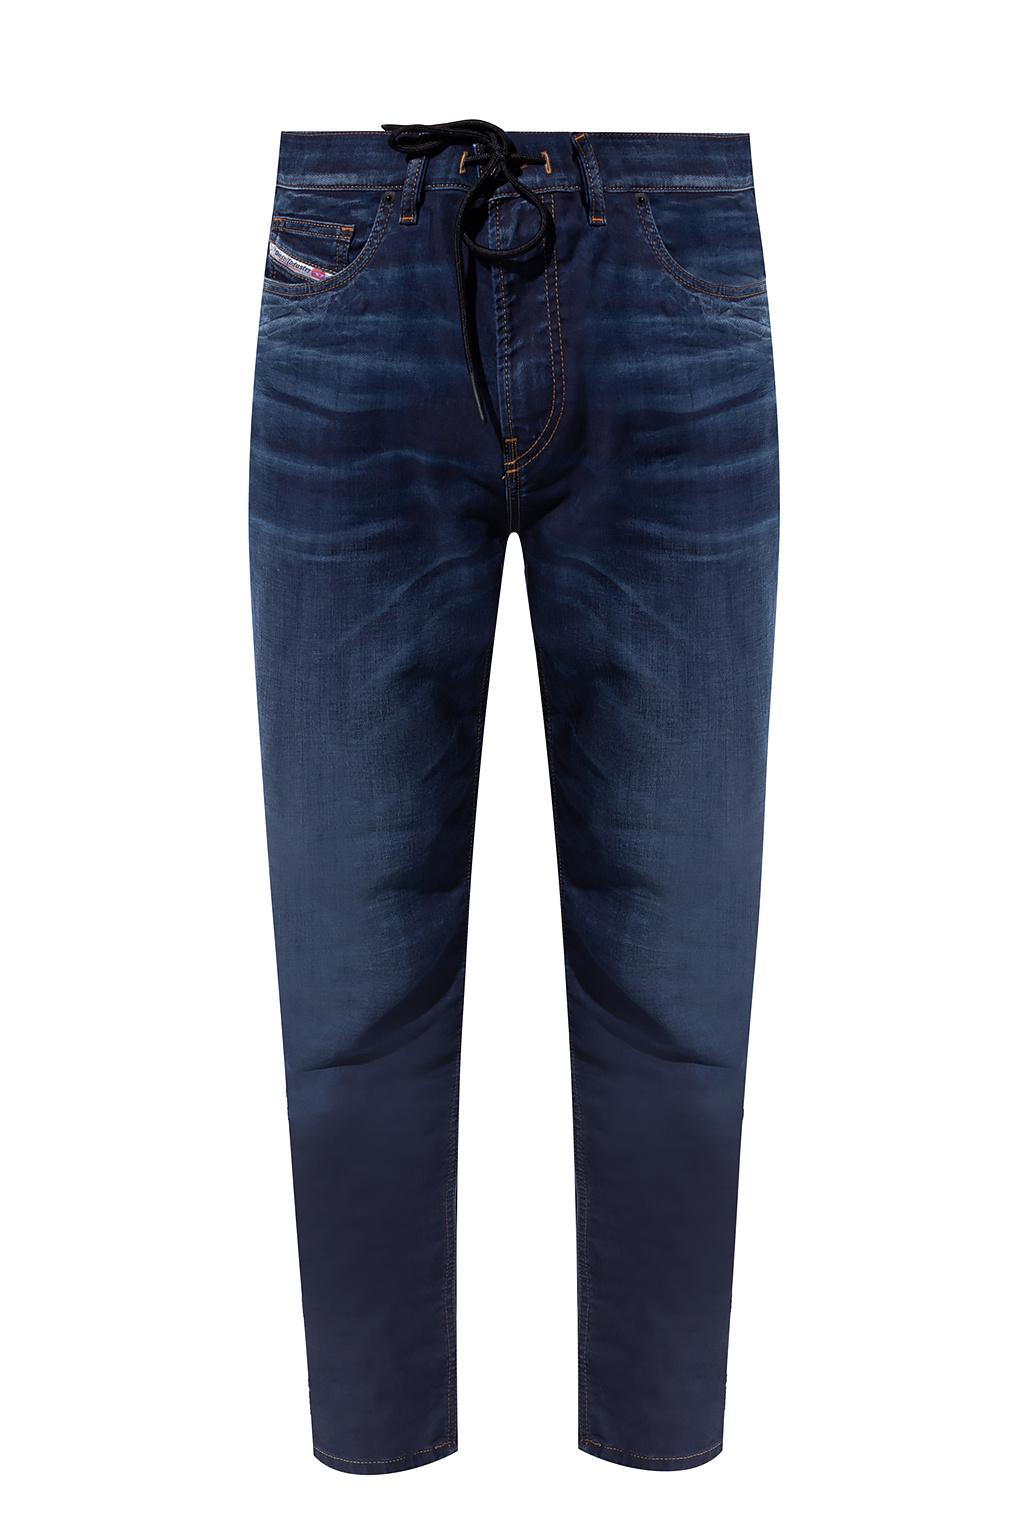 Hilfiger leopard Vider Diesel - - blue - print jeans IetpShops mini \'D Czechia Jogg\' Tommy Navy dress